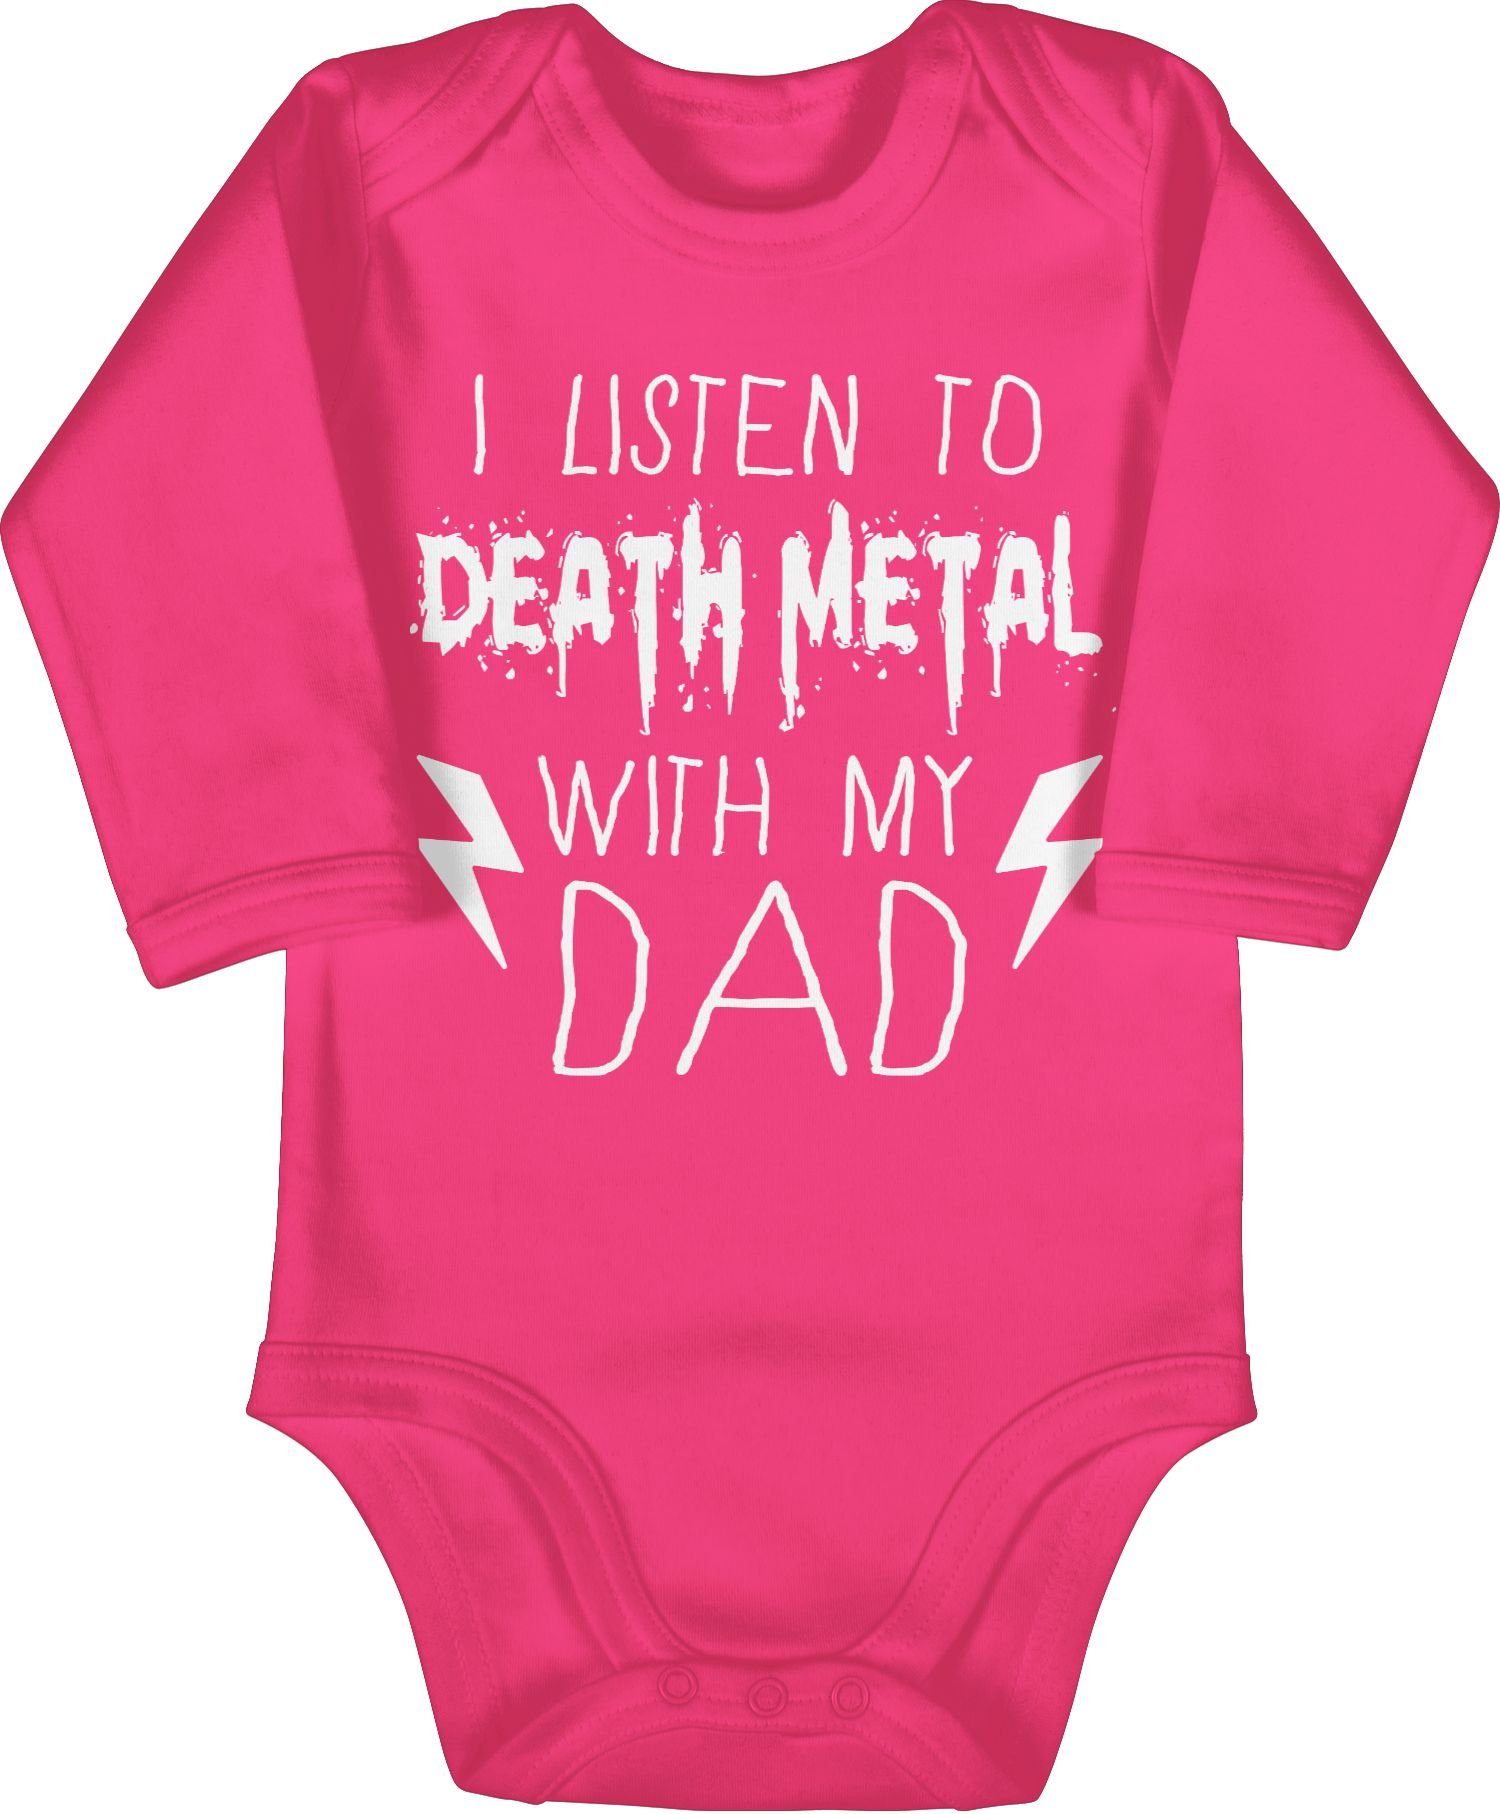 Shirtracer Shirtbody I listen to Death Metal with my dad weiß Sprüche Baby 2 Fuchsia